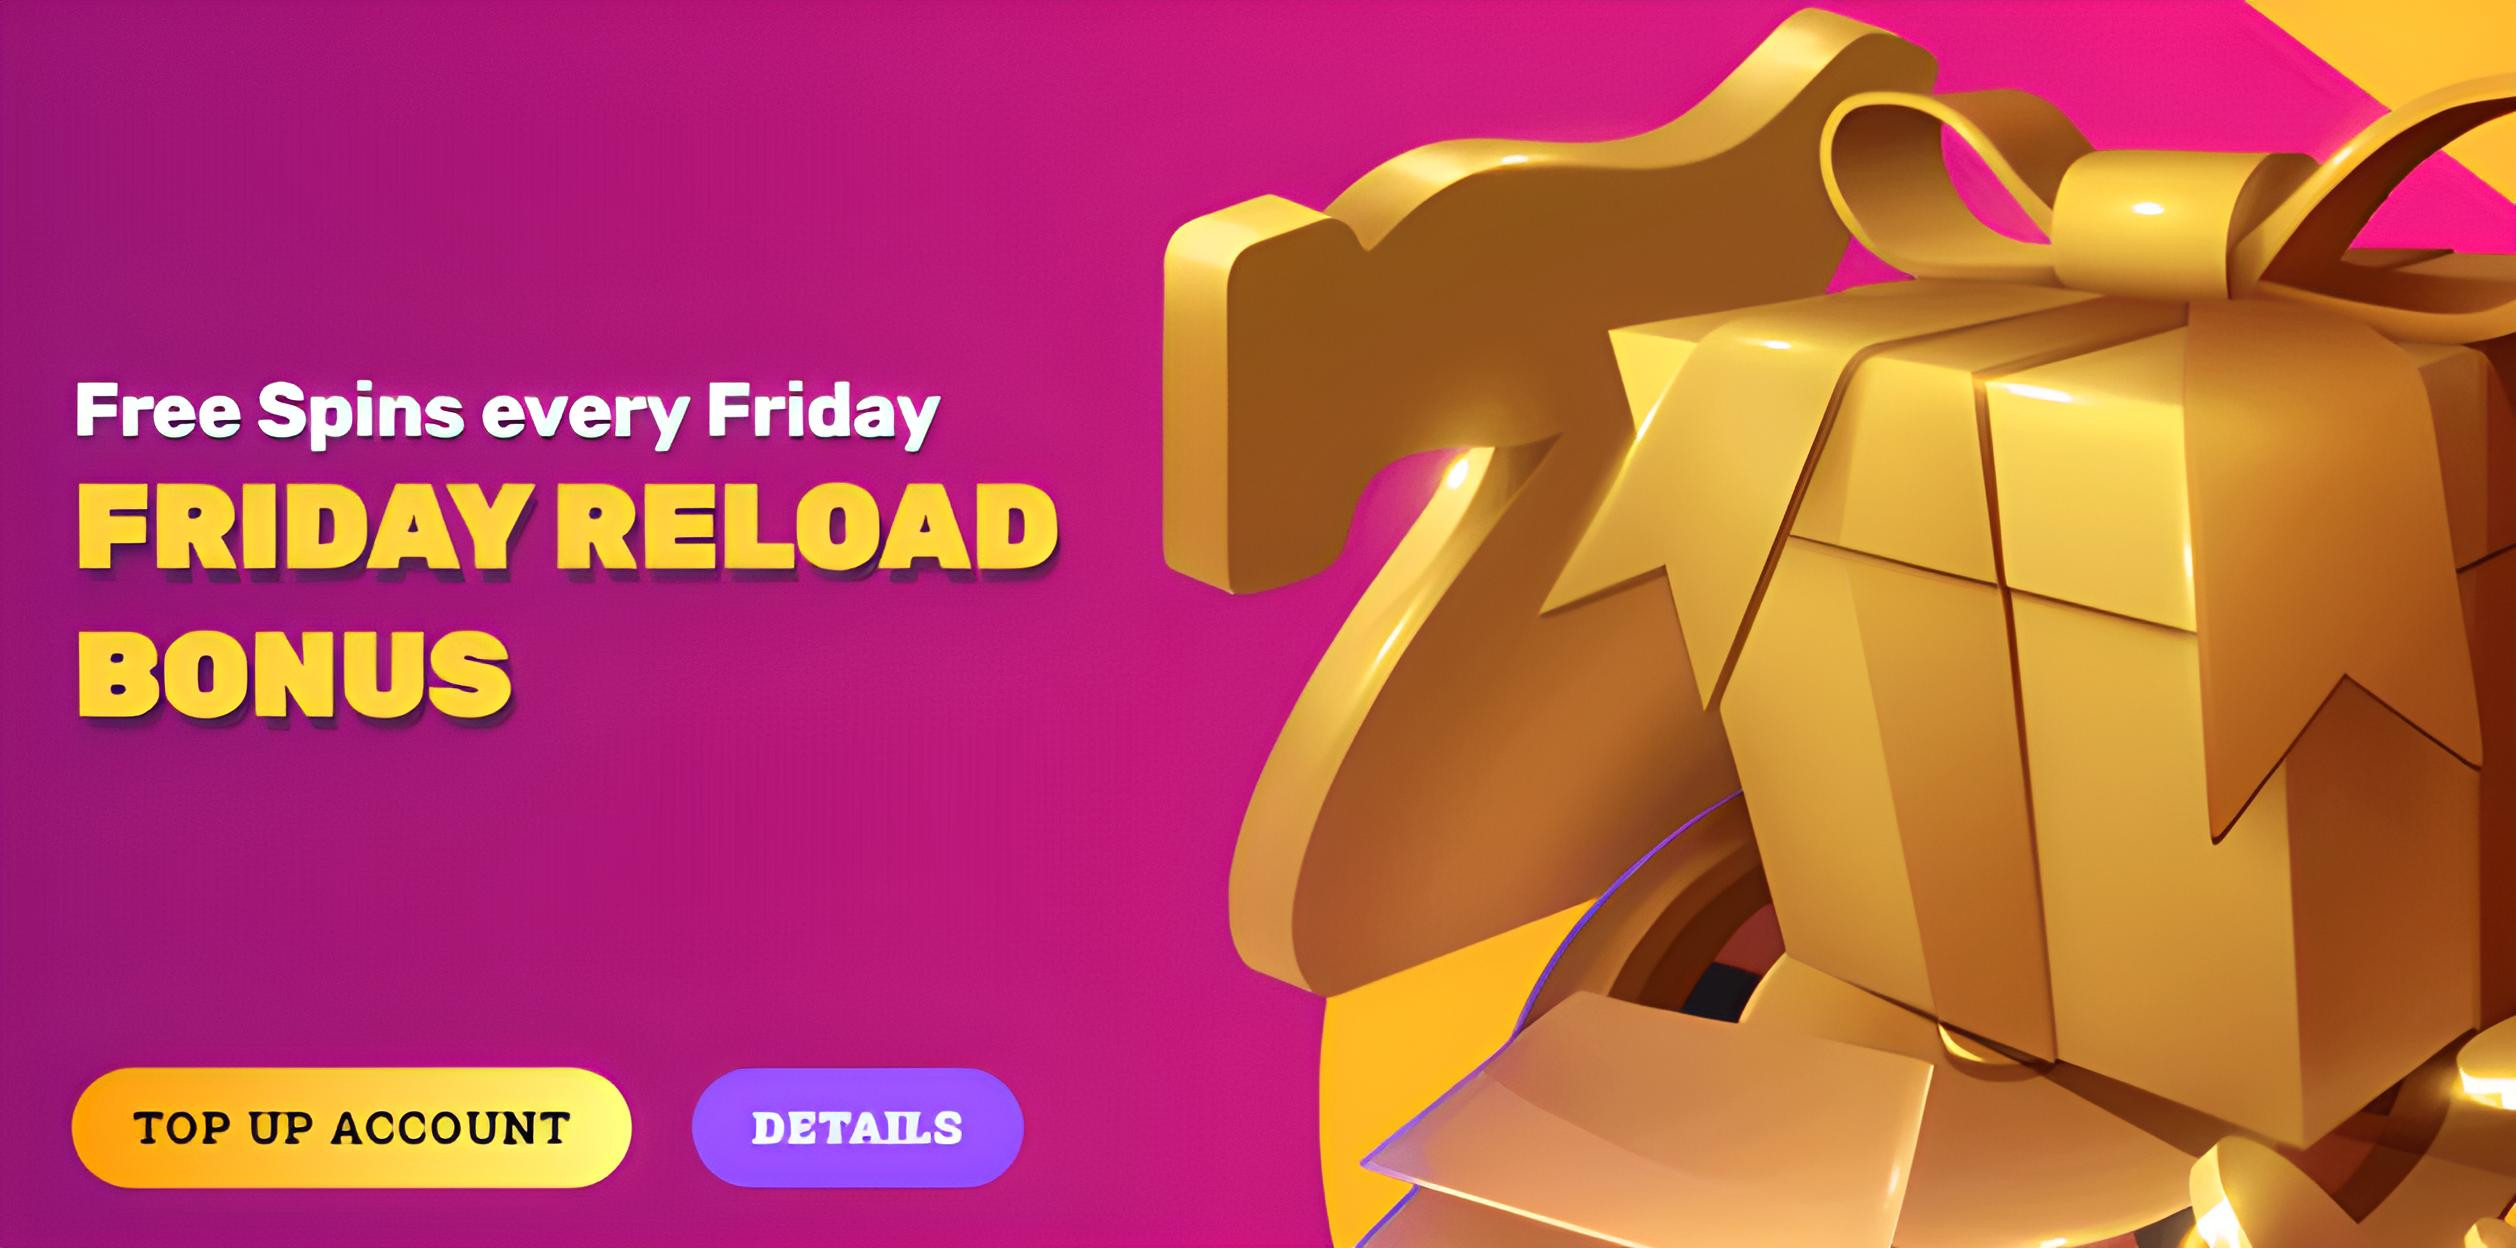 Friday Reload Bonus at RocketPlay Casino